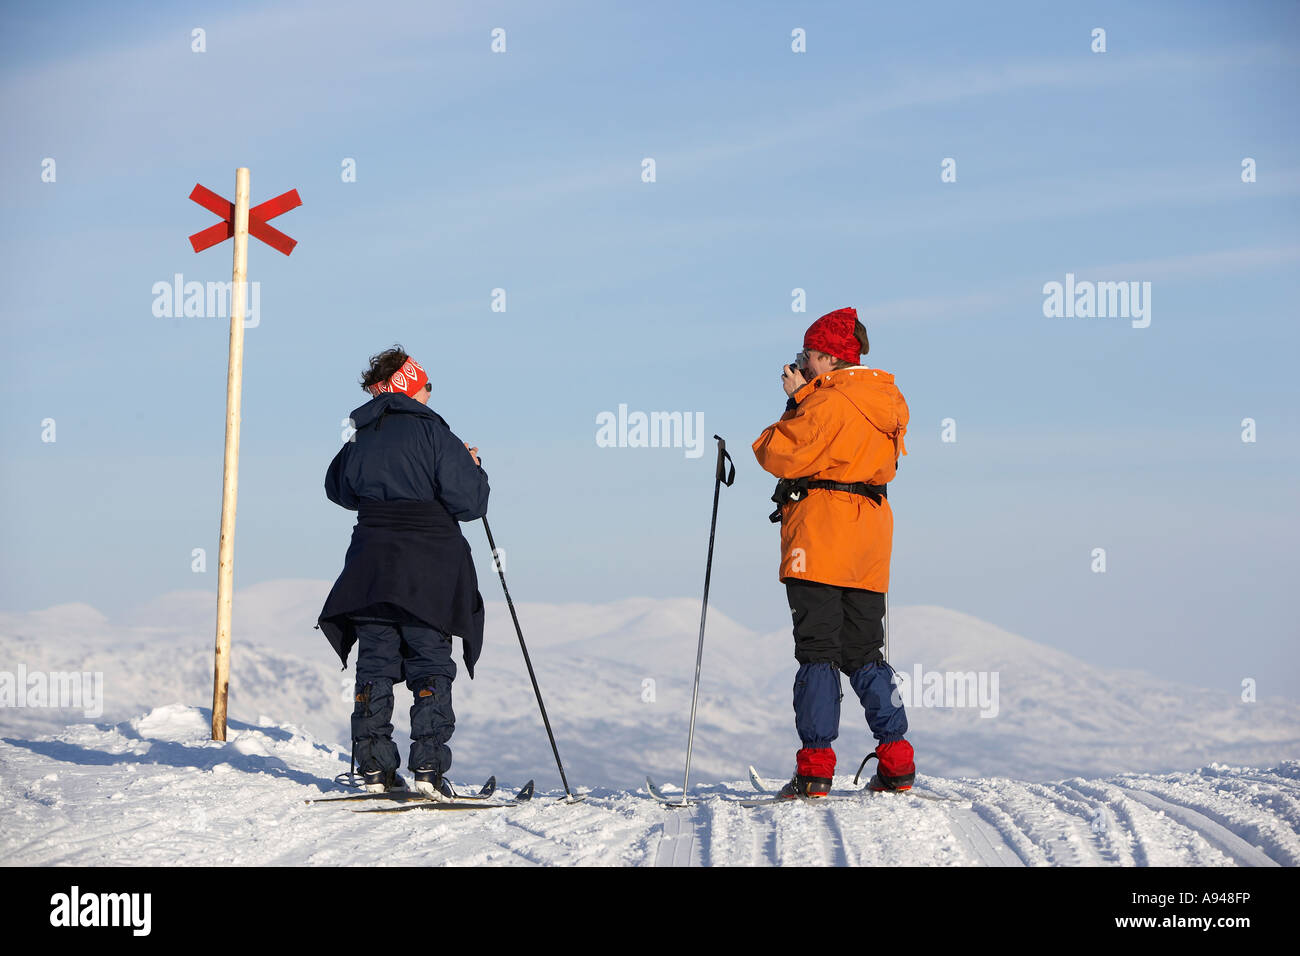 Skier taking photo, Bjorkliden, Lapland, Sweden Stock Photo